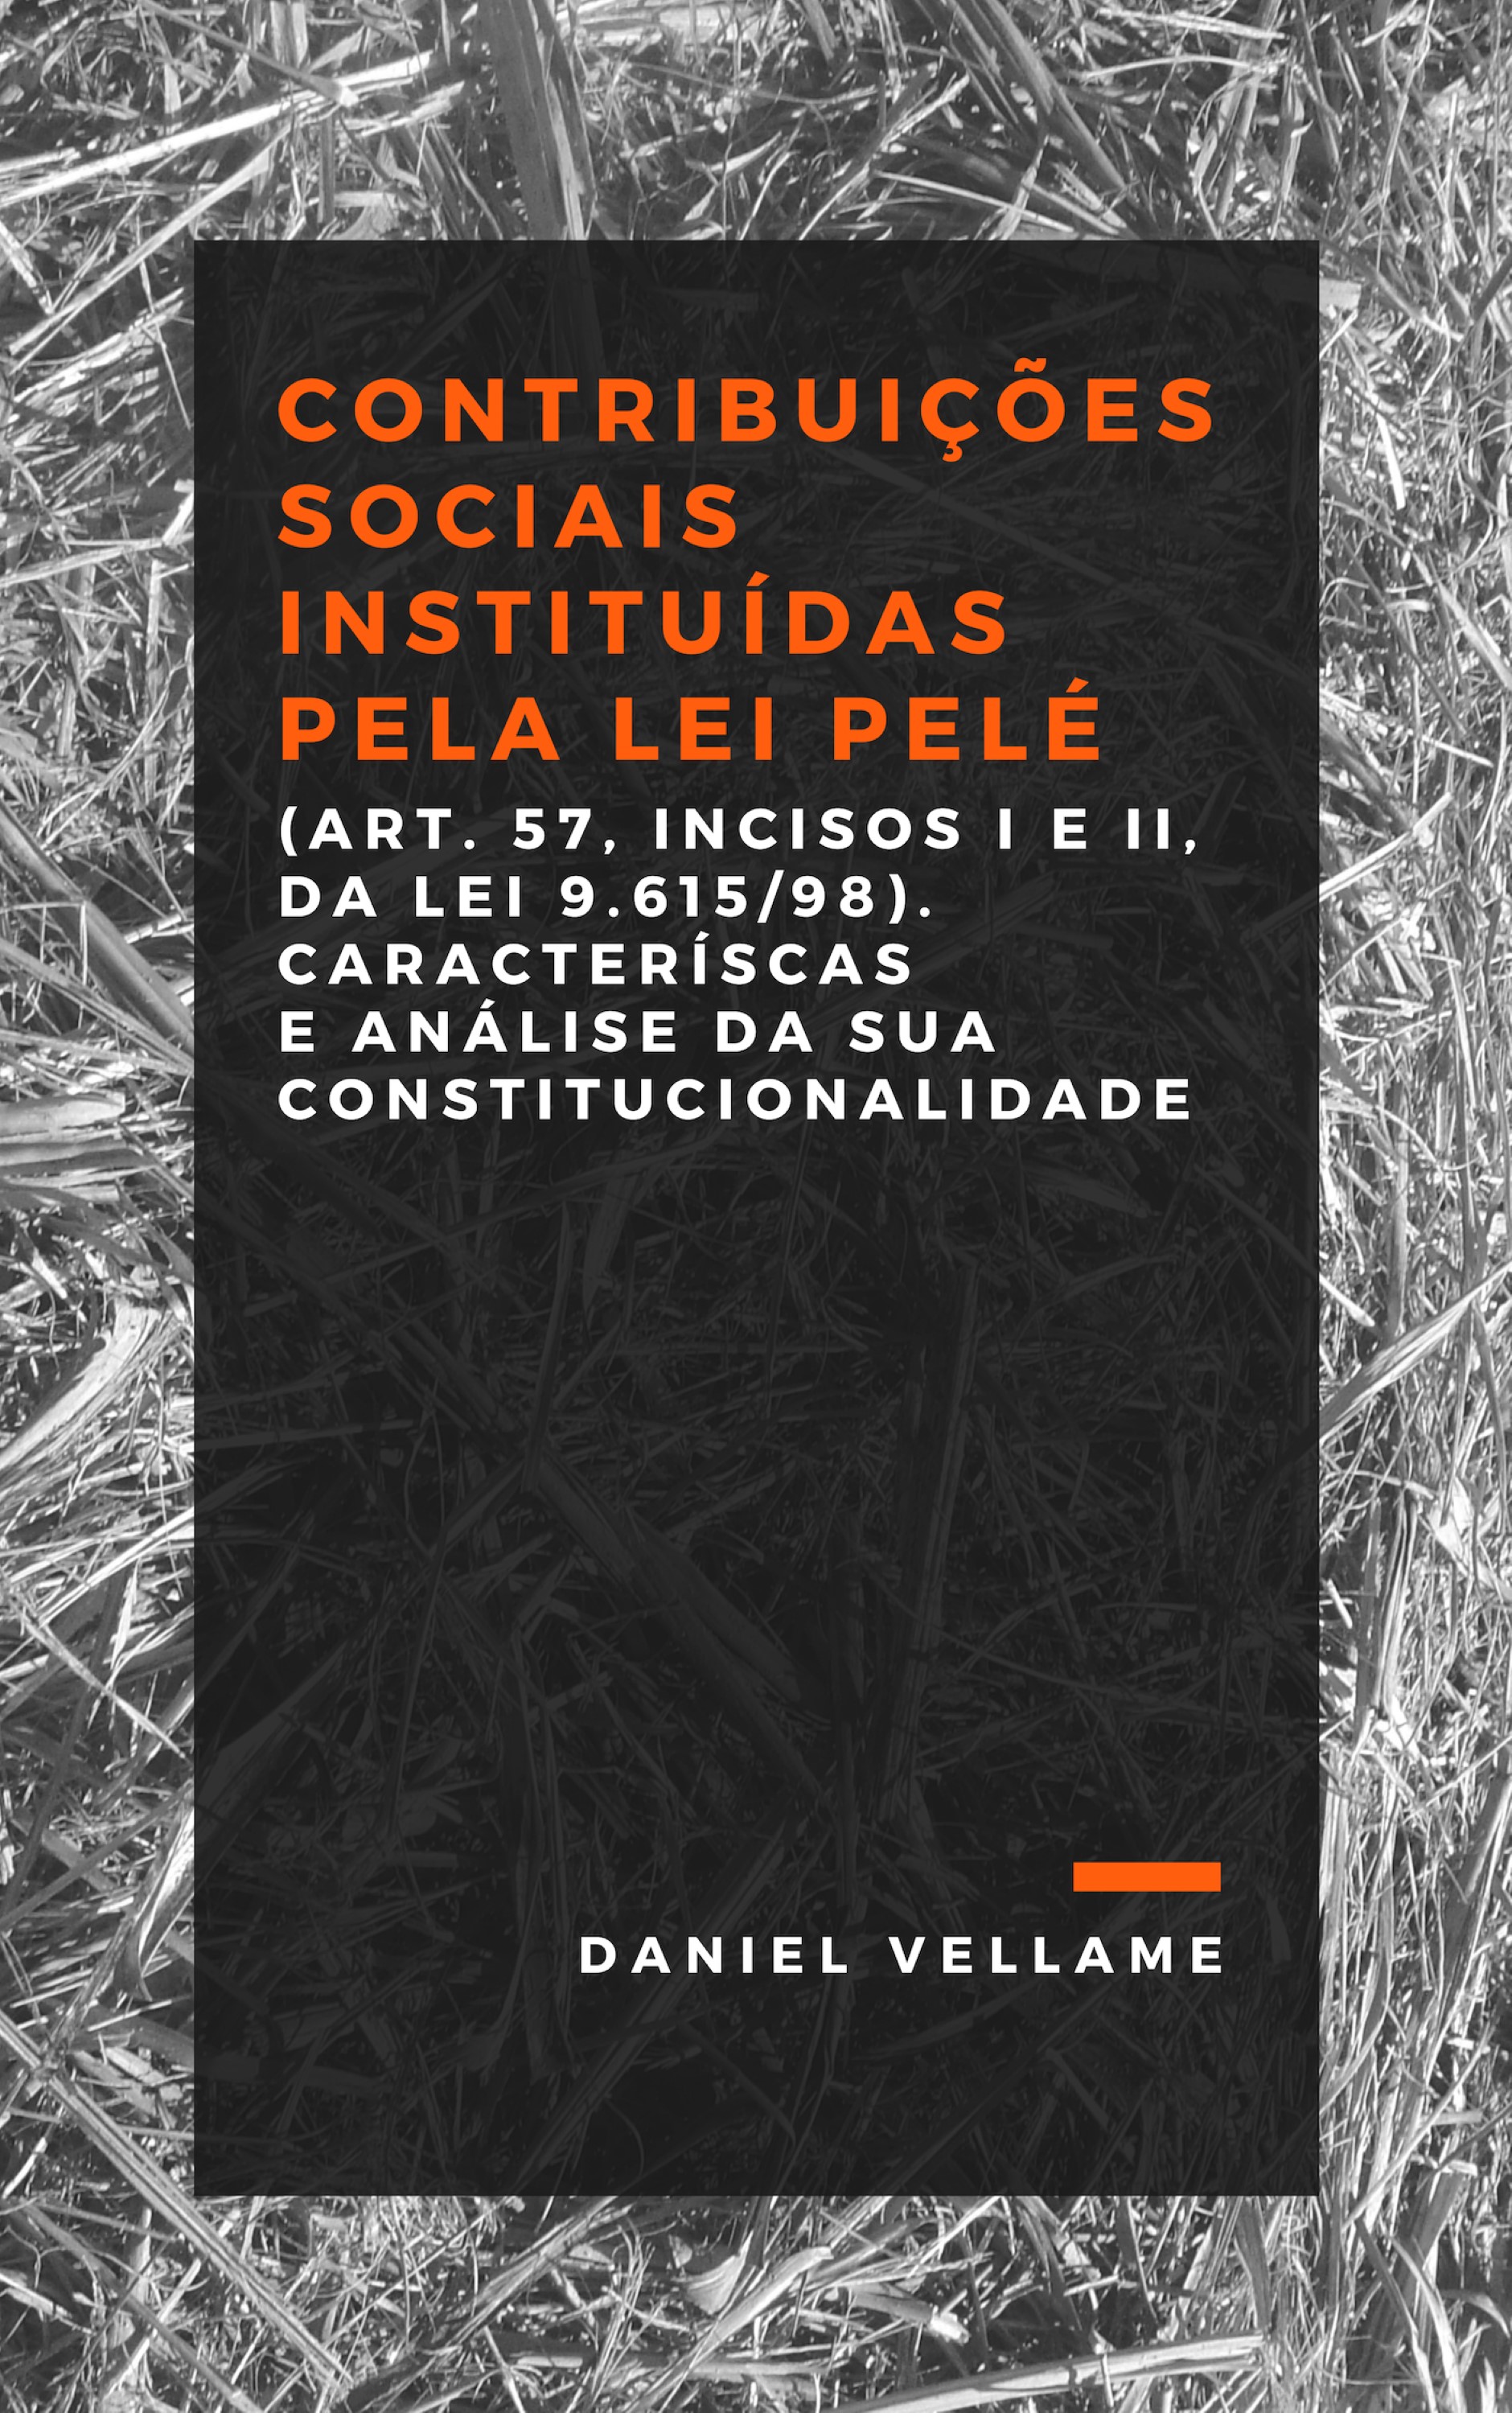 CONTRIBUIÇÕES SOCIAIS INSTITUÍDAS PELA LEI PELÉ (ART. 57, INCISOS I E II, DA LEI 9.615/98)